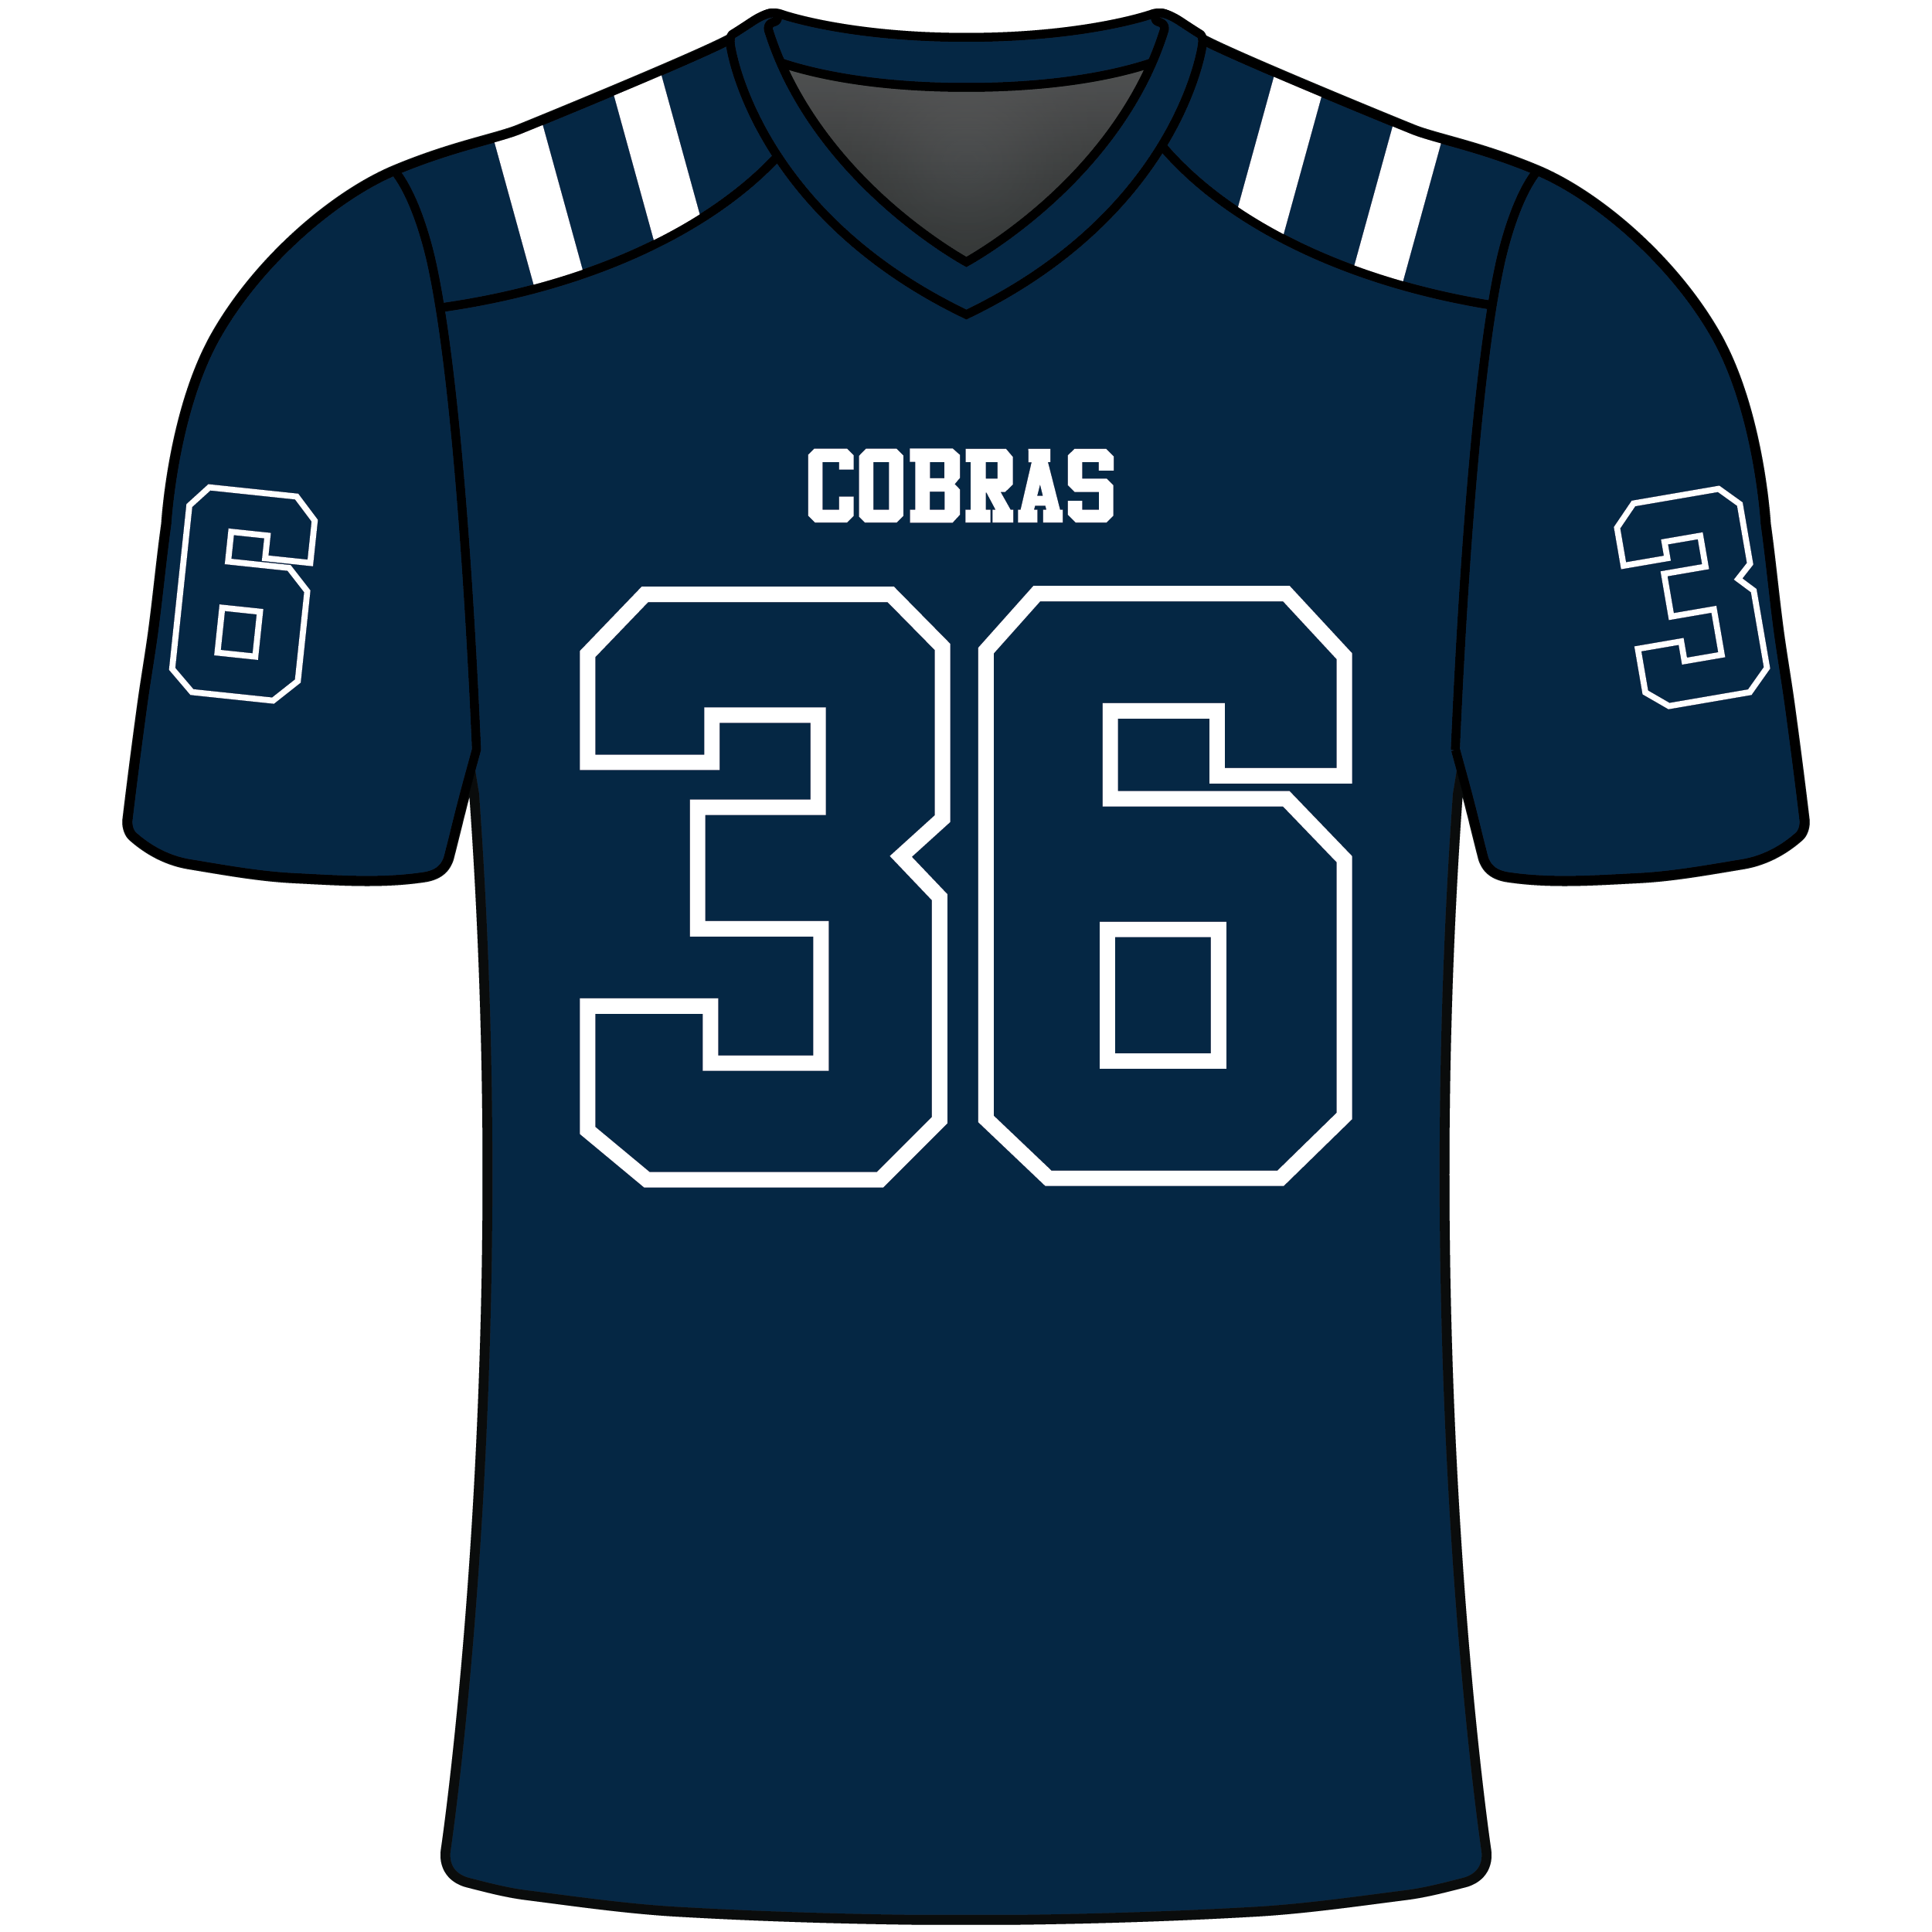  COBRAS Blue Fan Jersey